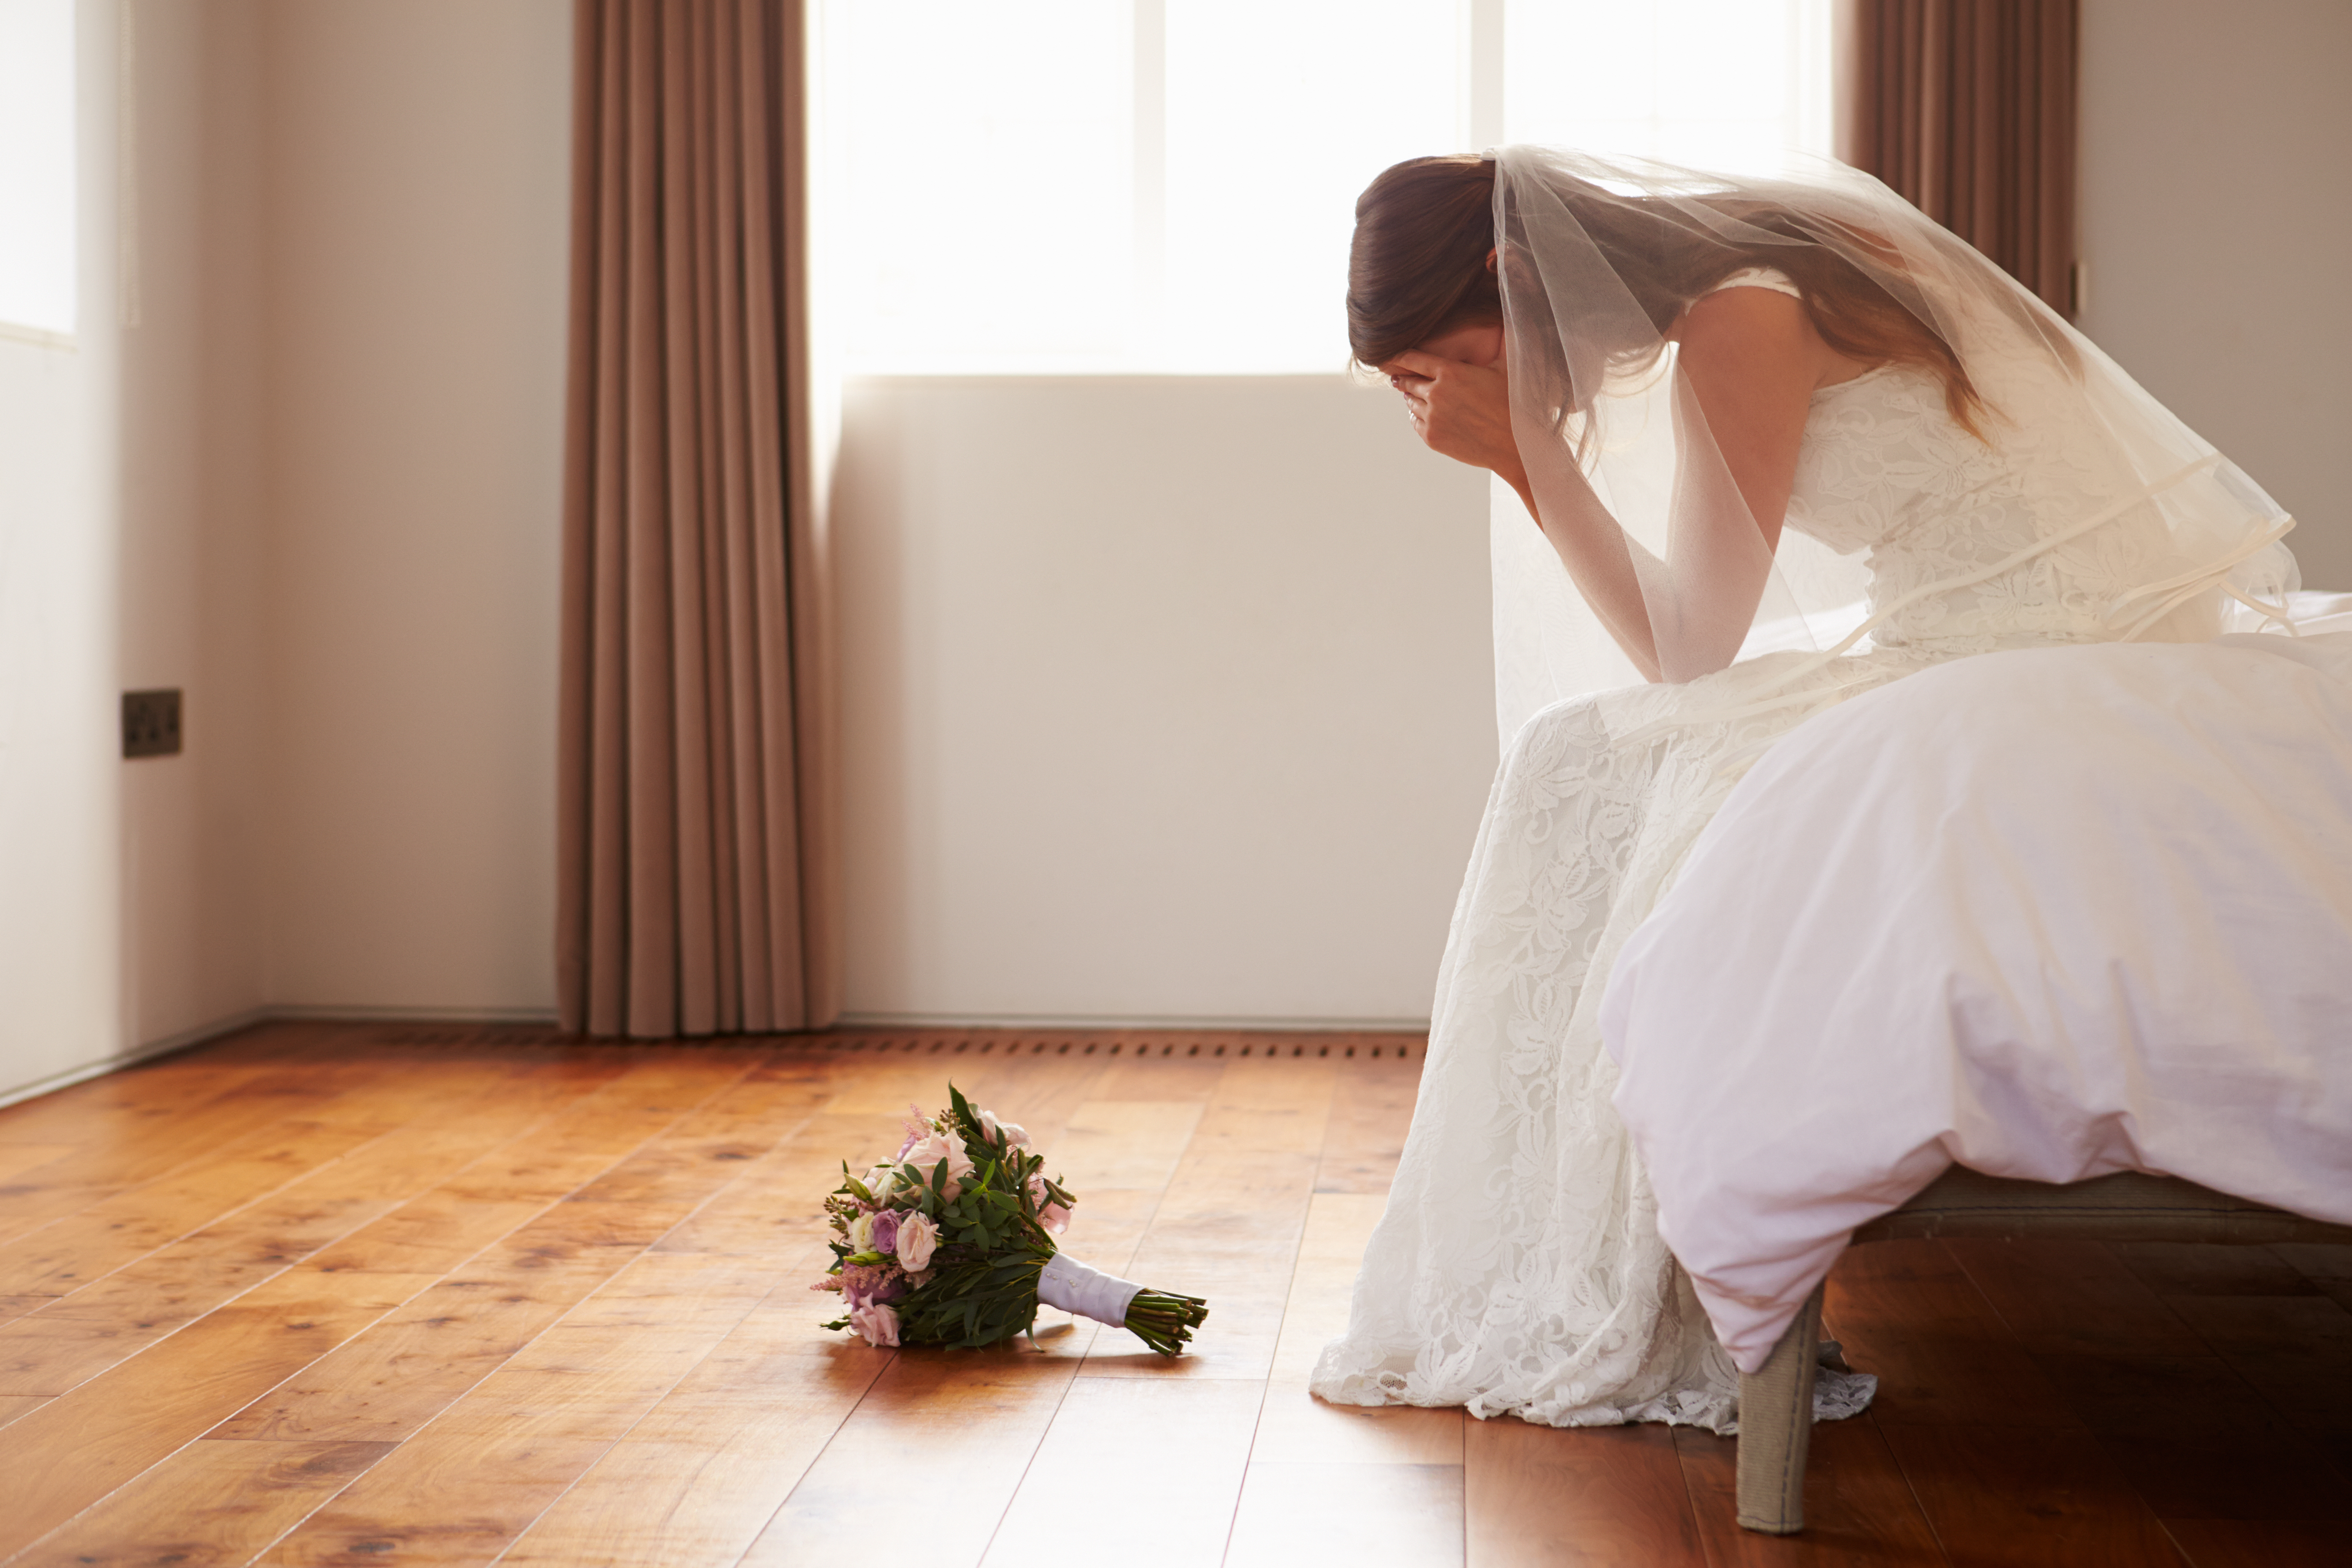 Una novia triste sentada en una habitación | Foto: Shutterstock